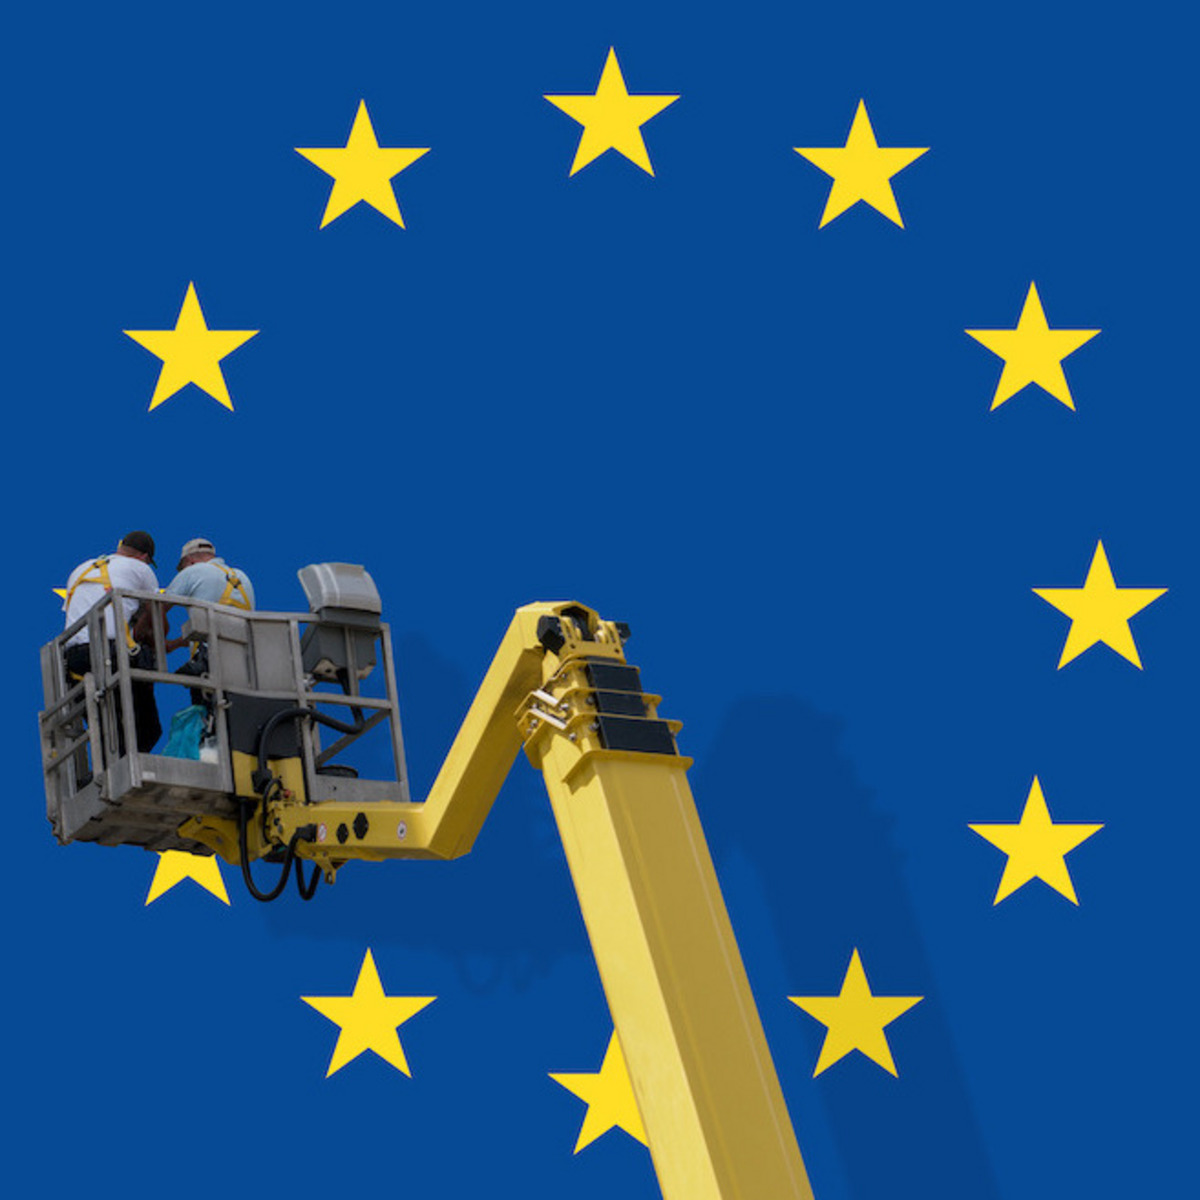 Ein Kran mit Bauarbeitern vor der Flagge der Europäischen Union